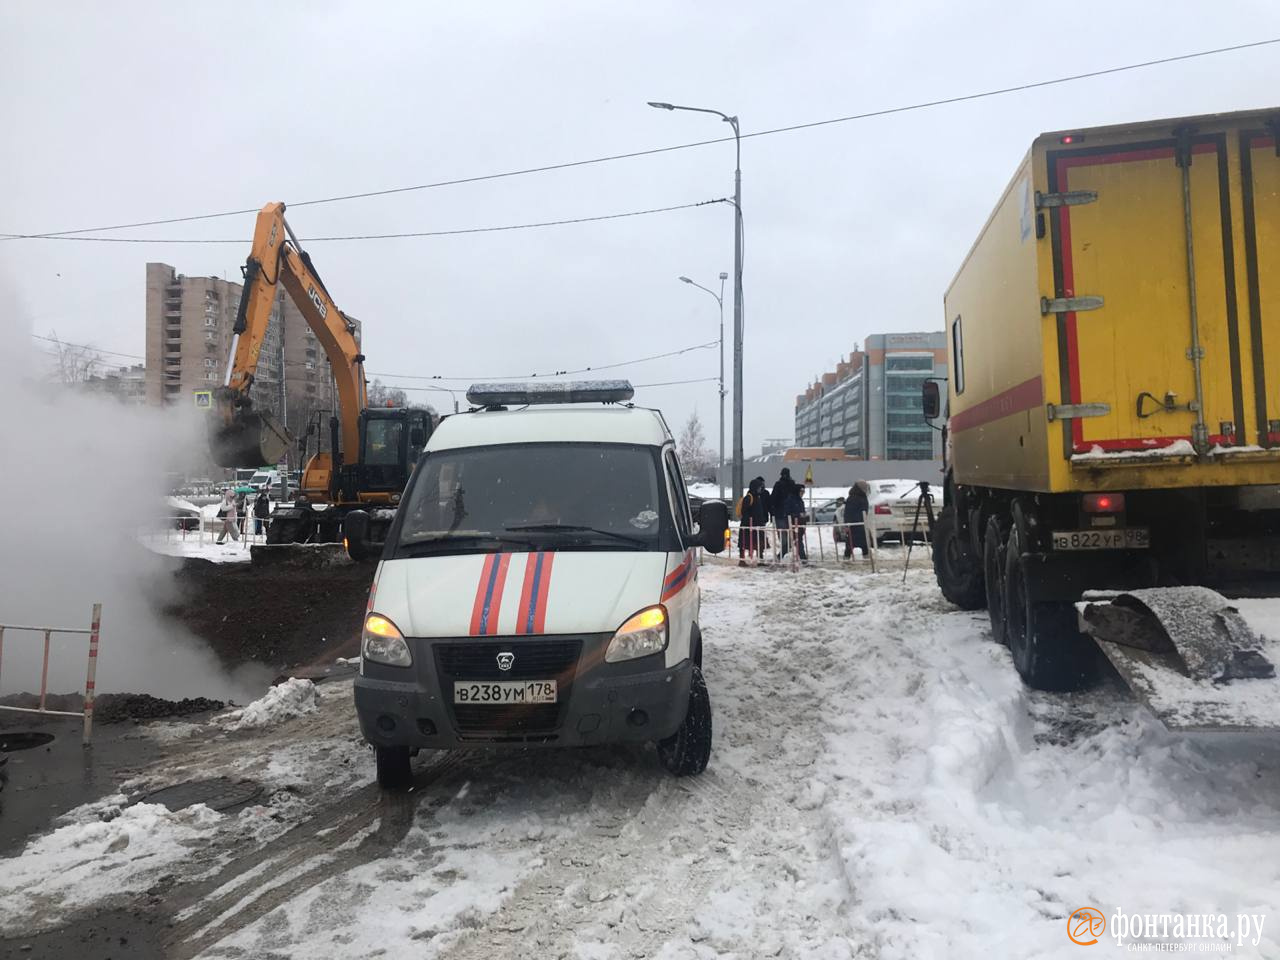 Жители более 600 домов в двух районах Петербурга и Кудрово остались без тепла из-за дефекта трубопровода